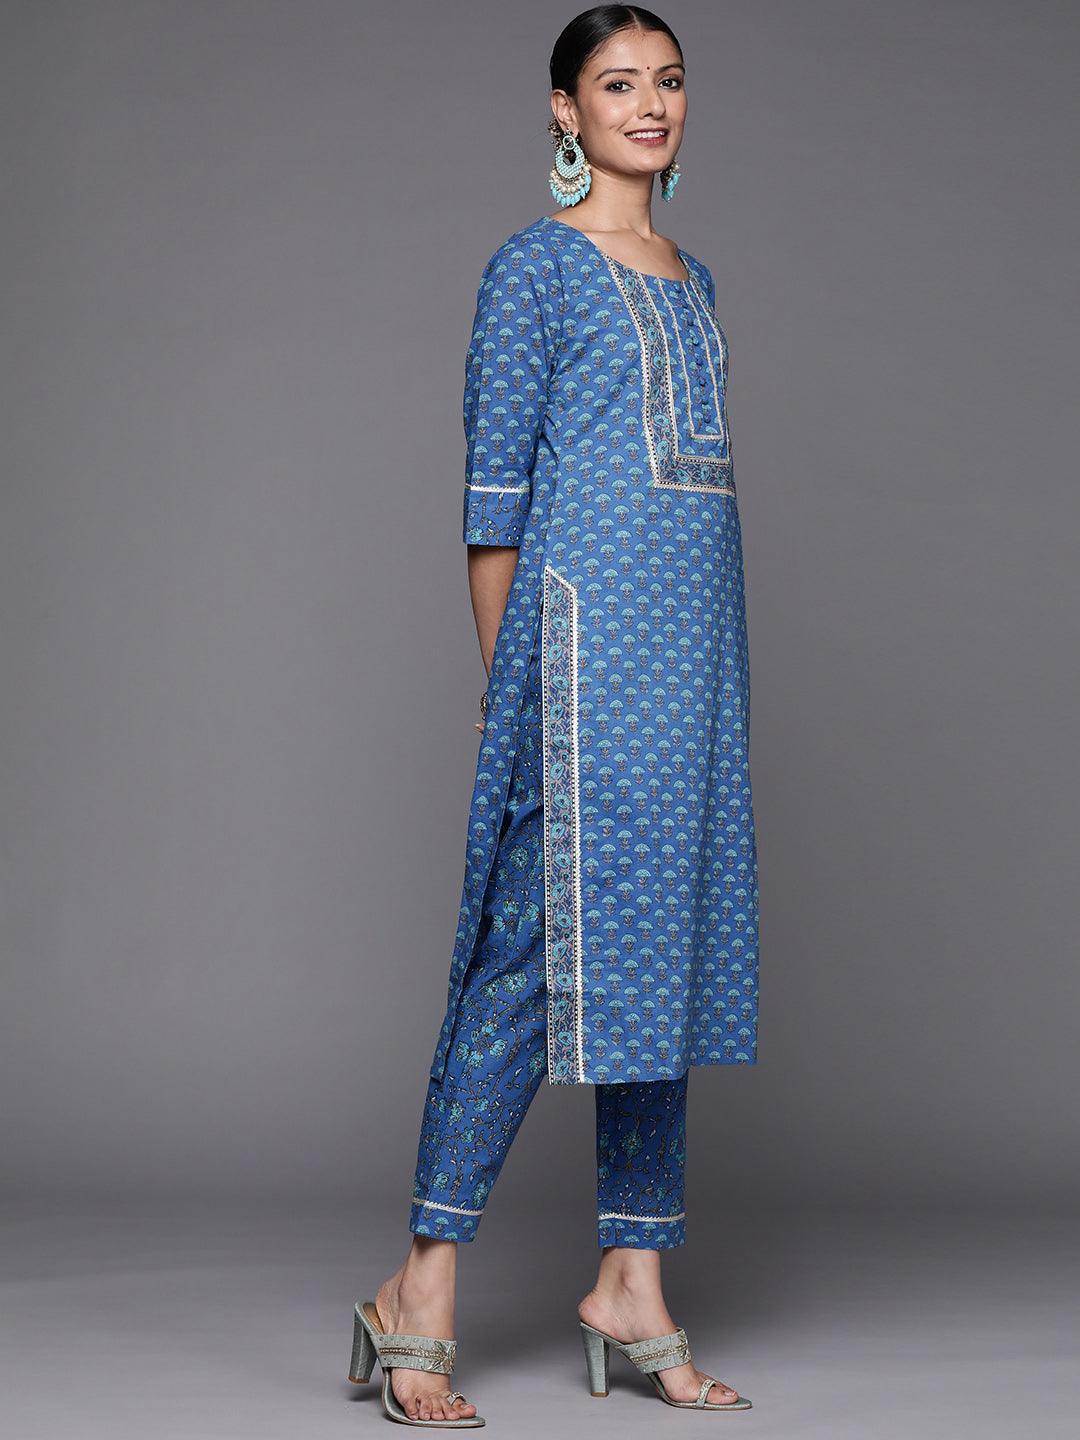 Blue Yoke Design Cotton Straight Suit Set - Libas